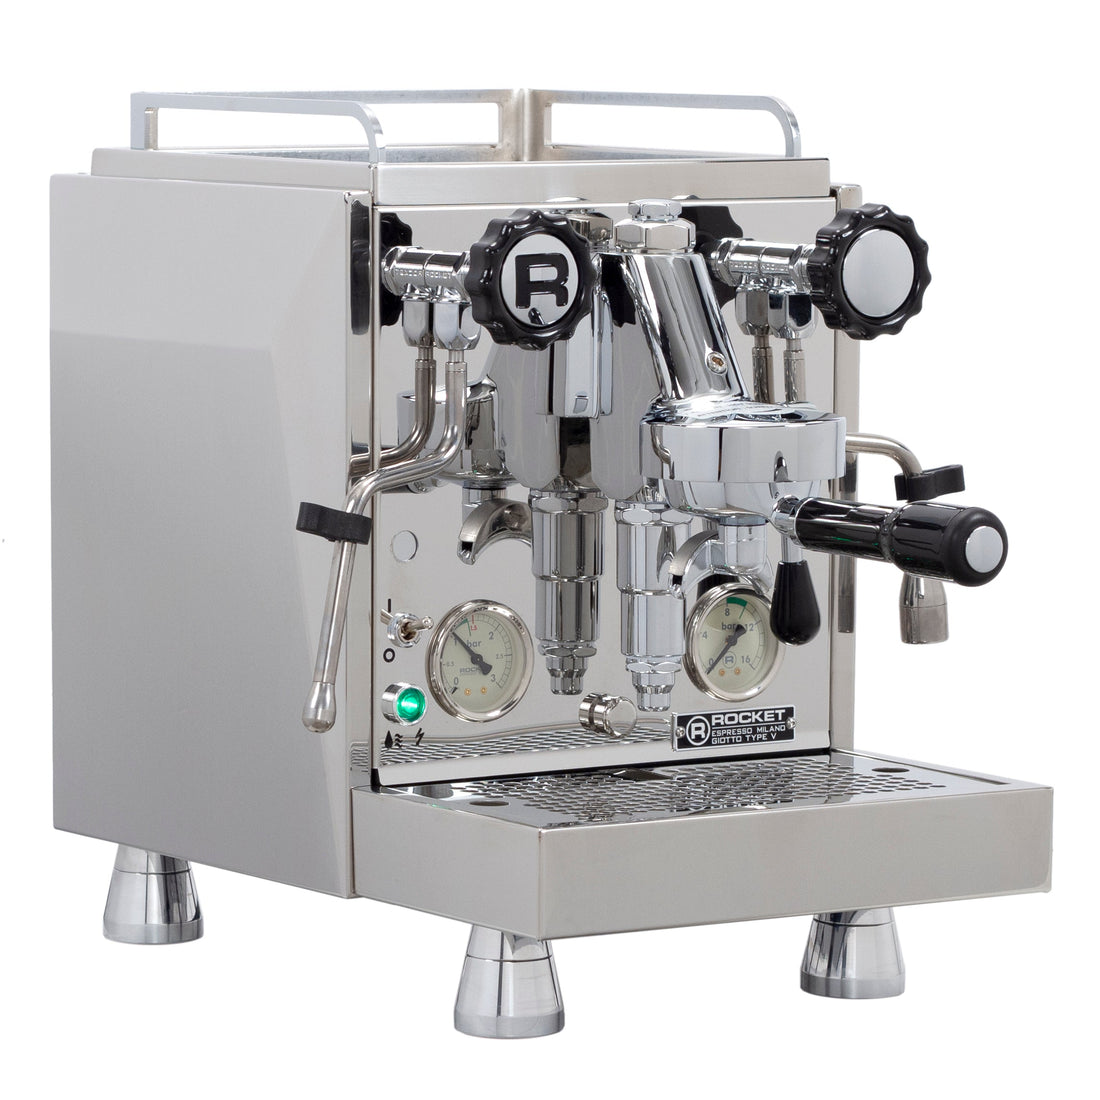 Rocket Espresso Giotto Cronometro V Espresso Machine - OPEN BOX